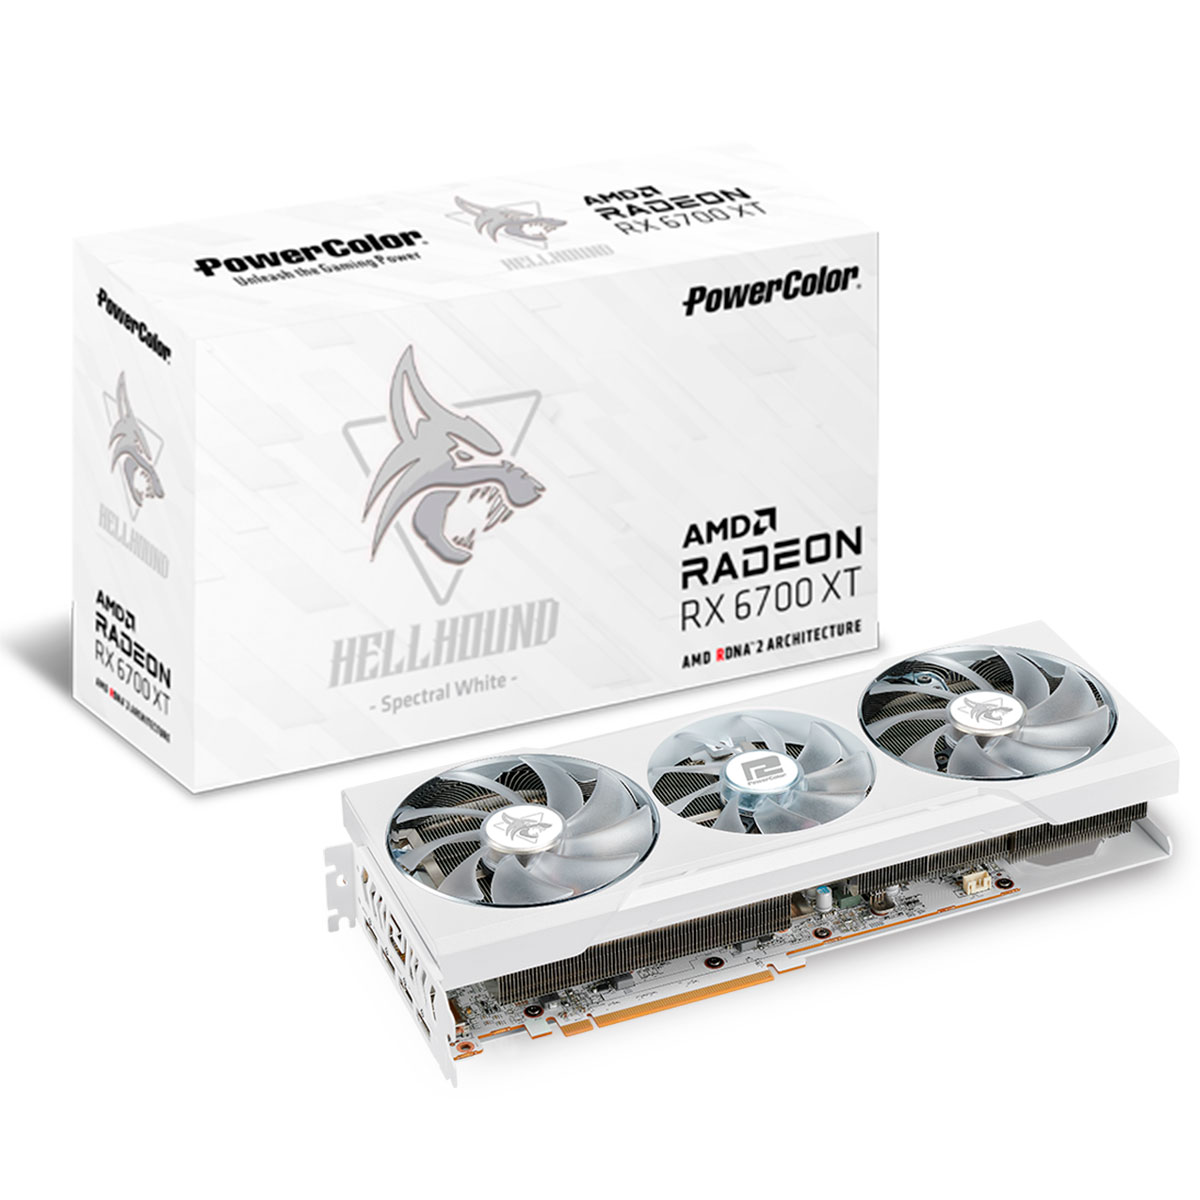 AMD Radeon RX 6700 XT 12GB GDDR6 192bits - Power Color Hellhound 12GBD6-3DHLV2